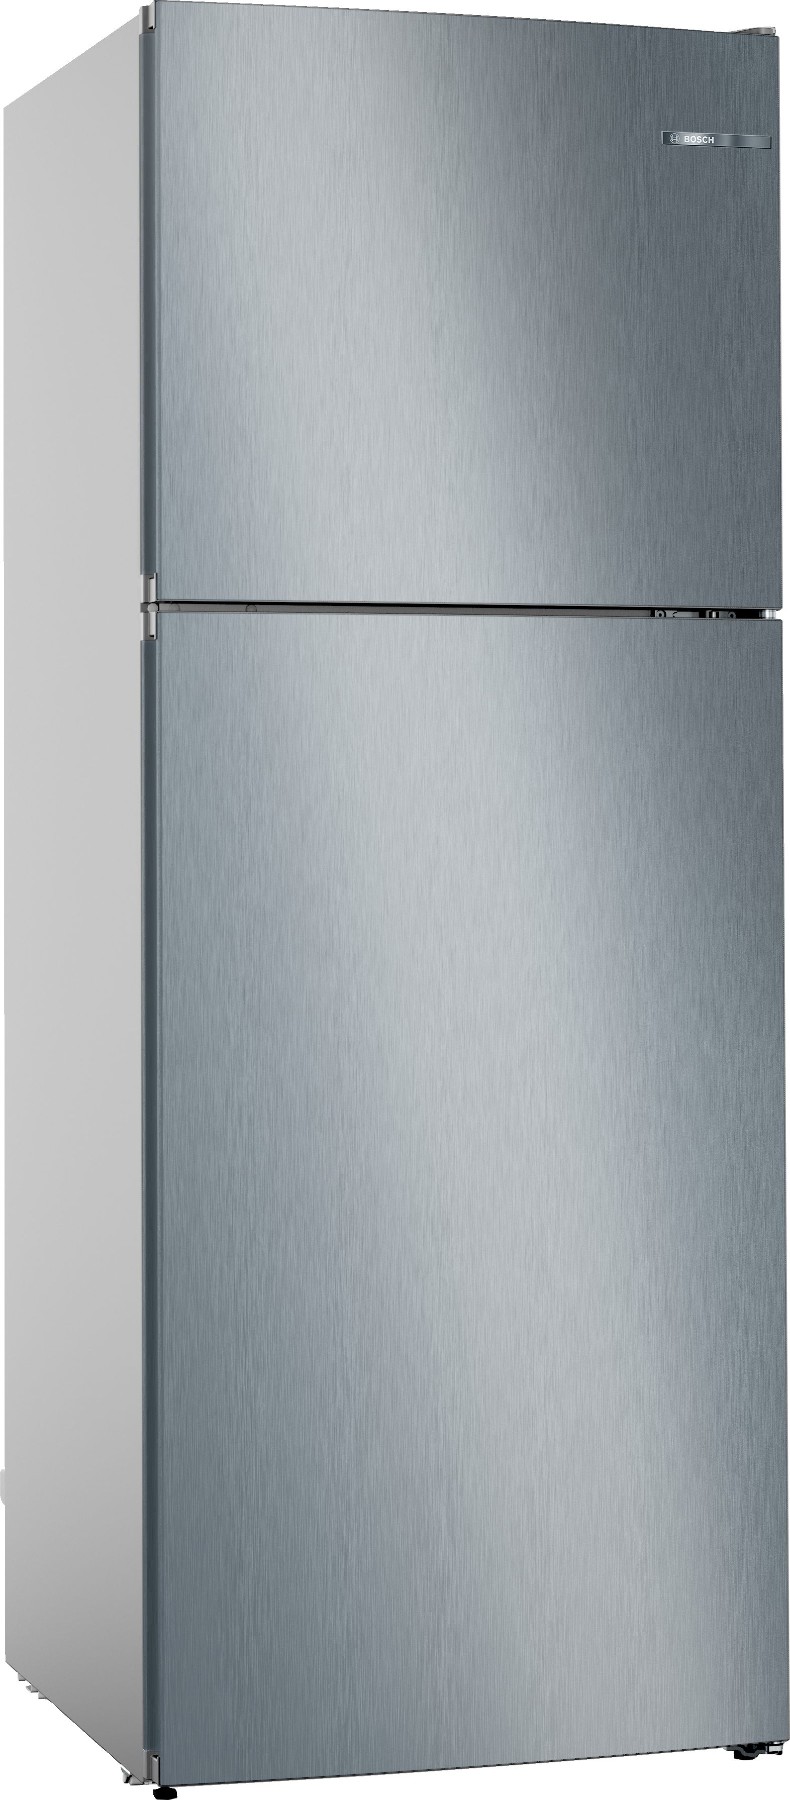 KDN55NLF1N Serie | 4, Üstten Donduruculu Buzdolabı, 186 x 70 cm, Paslanmaz çelik görünüm